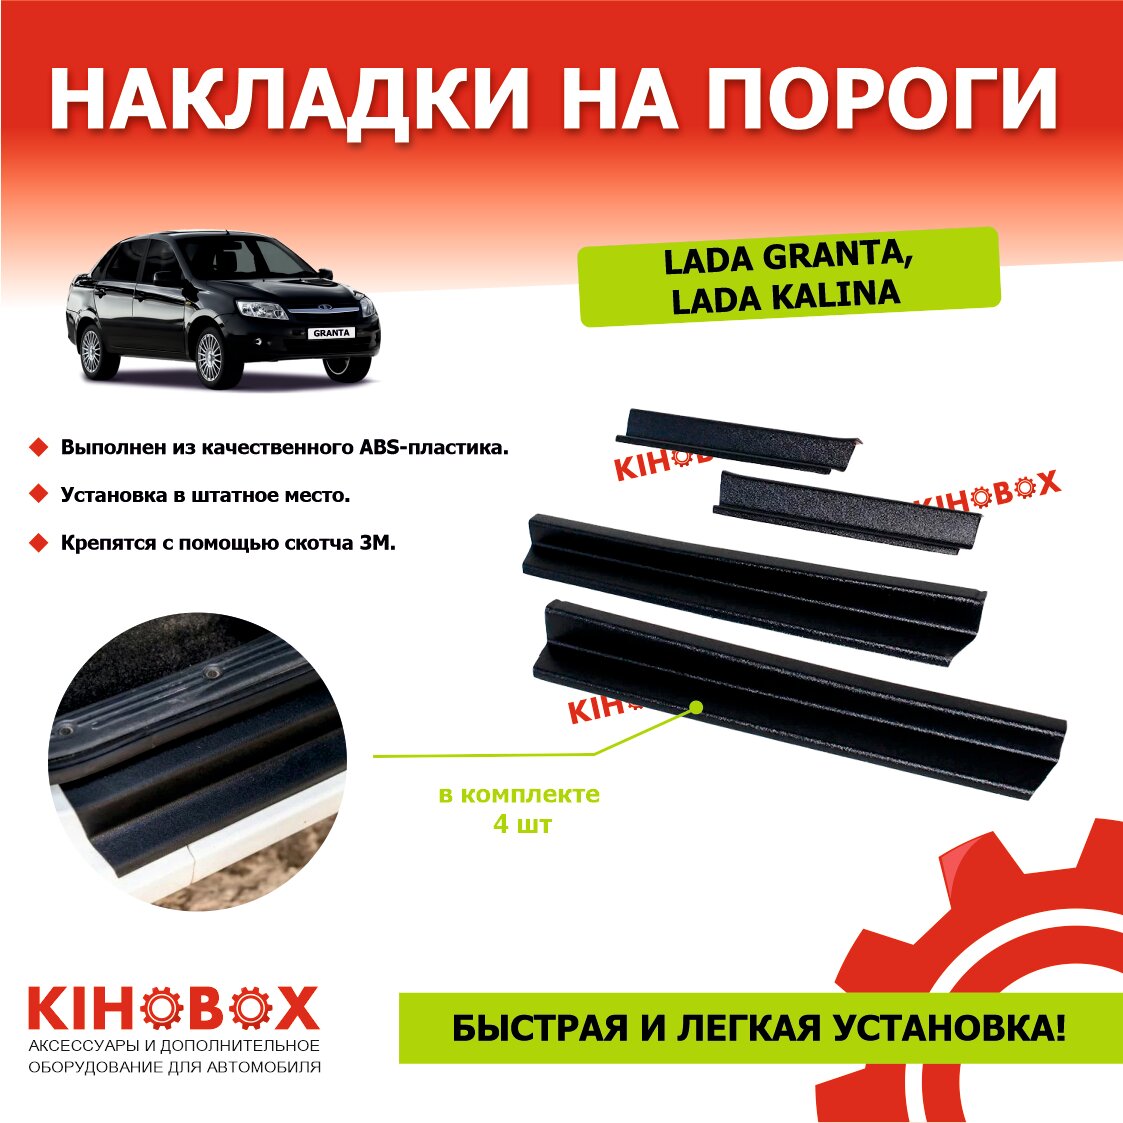 Накладки на пороги Лада Гранта и Лада Калина все семейство (комплект 4 шт) - KIHOBOX АРТ 5501802